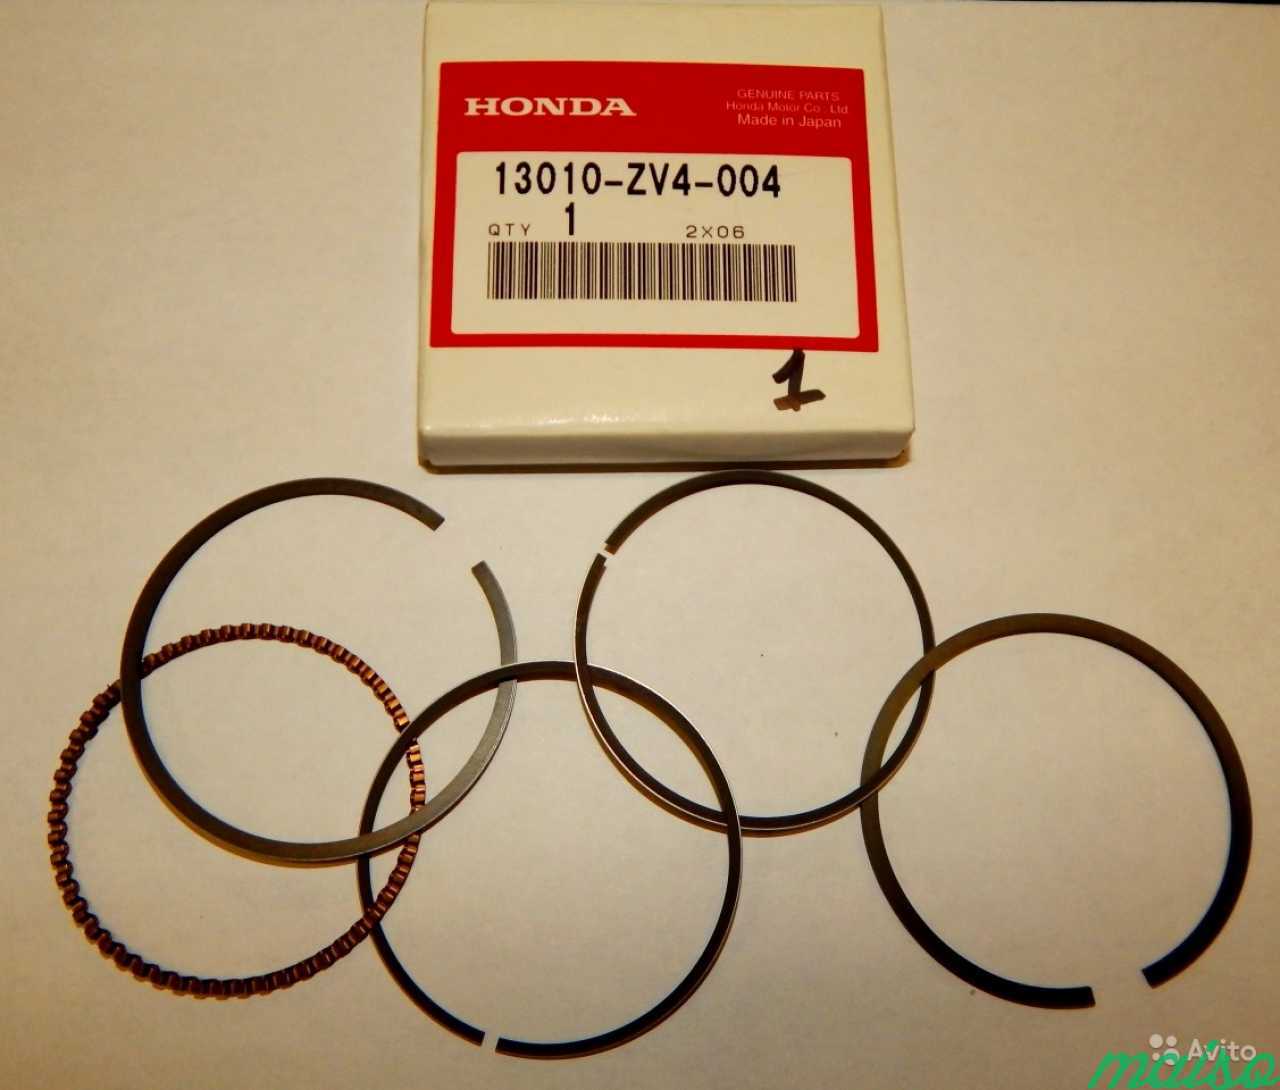 Поршневые кольца для двигателя Хонда сб 650. Кольца Хонда 13010-z6l-00 made in Japan. Поршневые кольца Хонда Аккорд 8 k24z3. Кольца поршневые Хонда Инспаер.